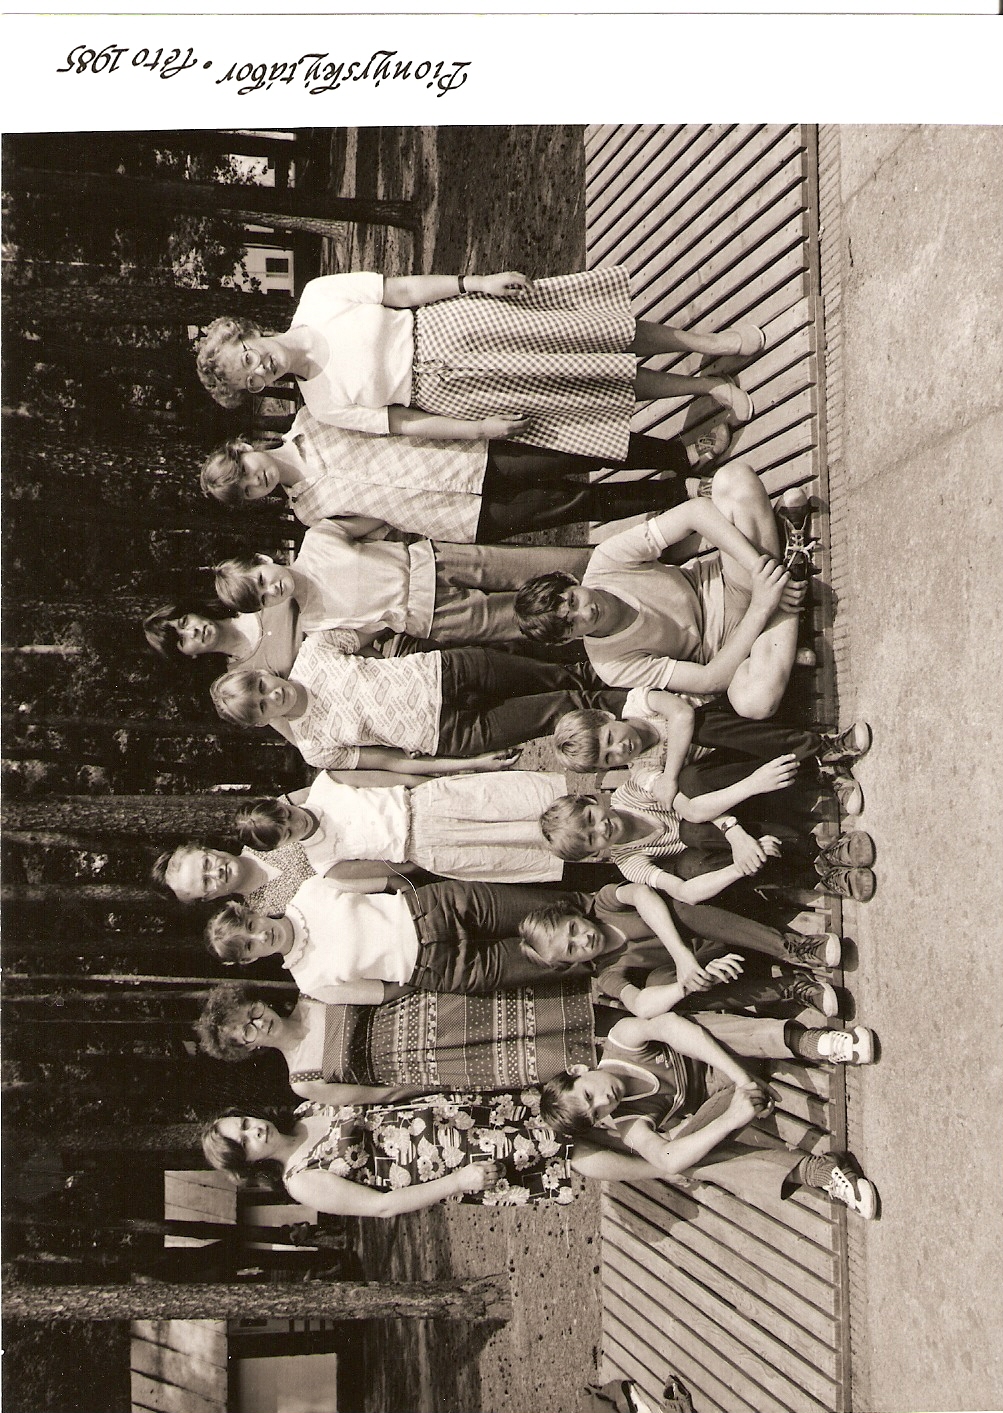 ROK 1985 - družina děvčat a chlapců ze Sverdlovska